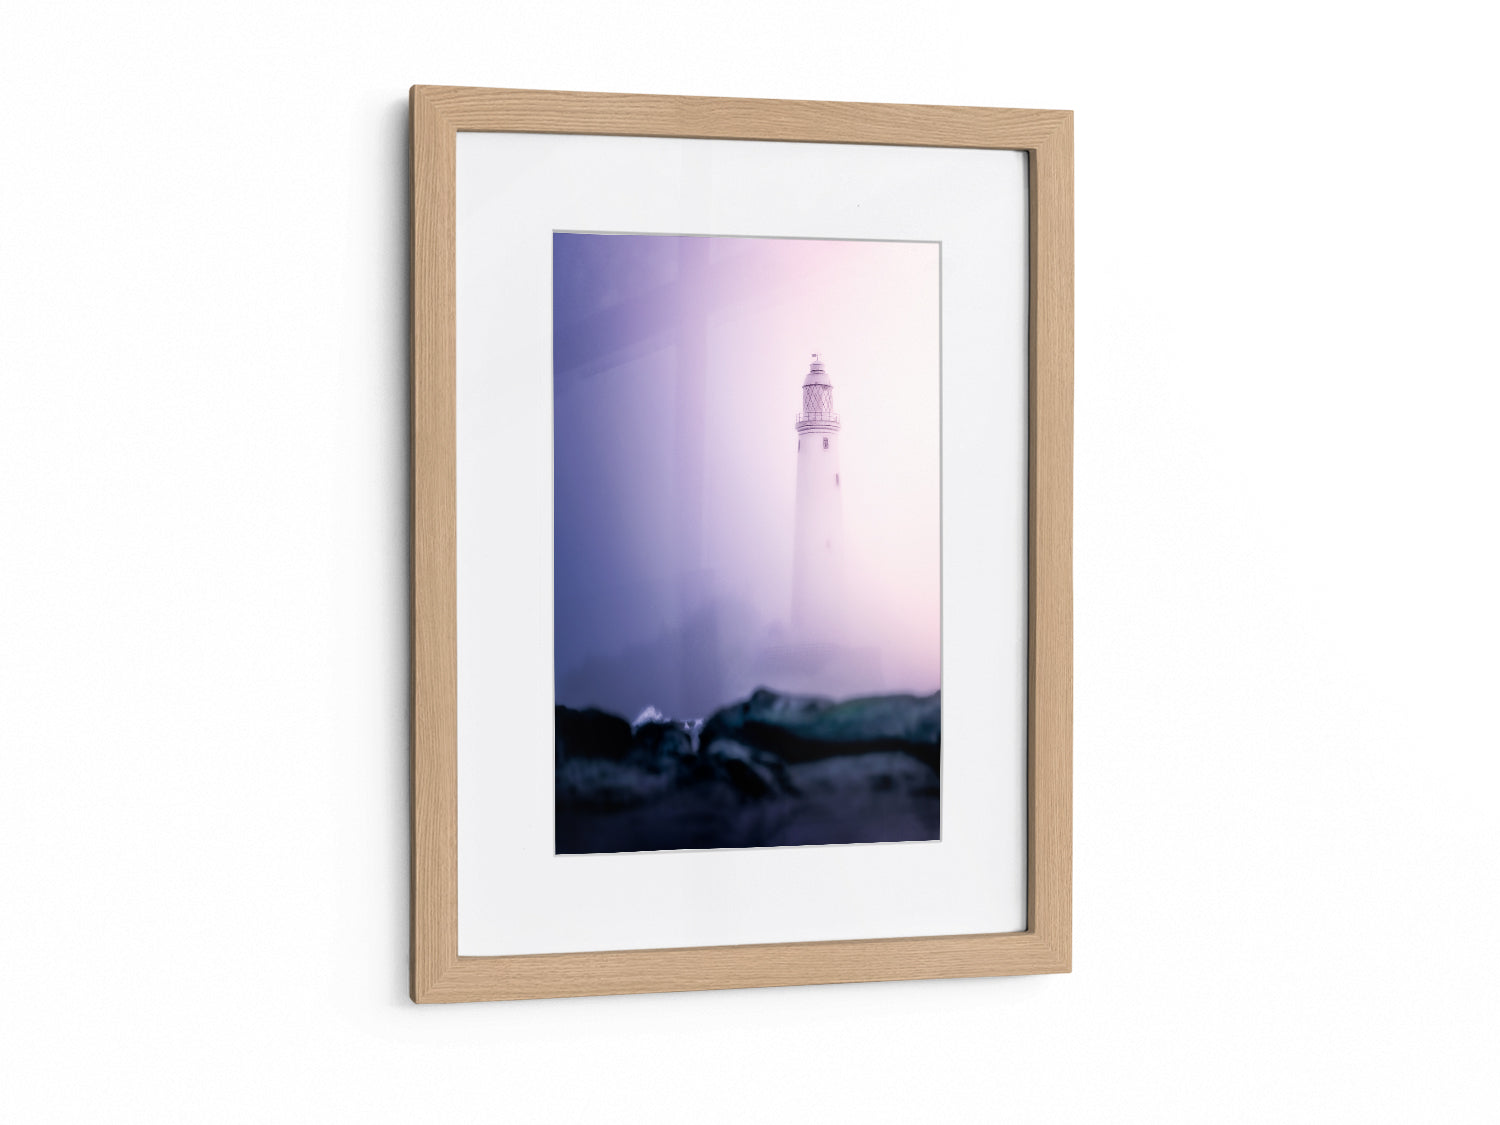 St Mary's Lighthouse - England